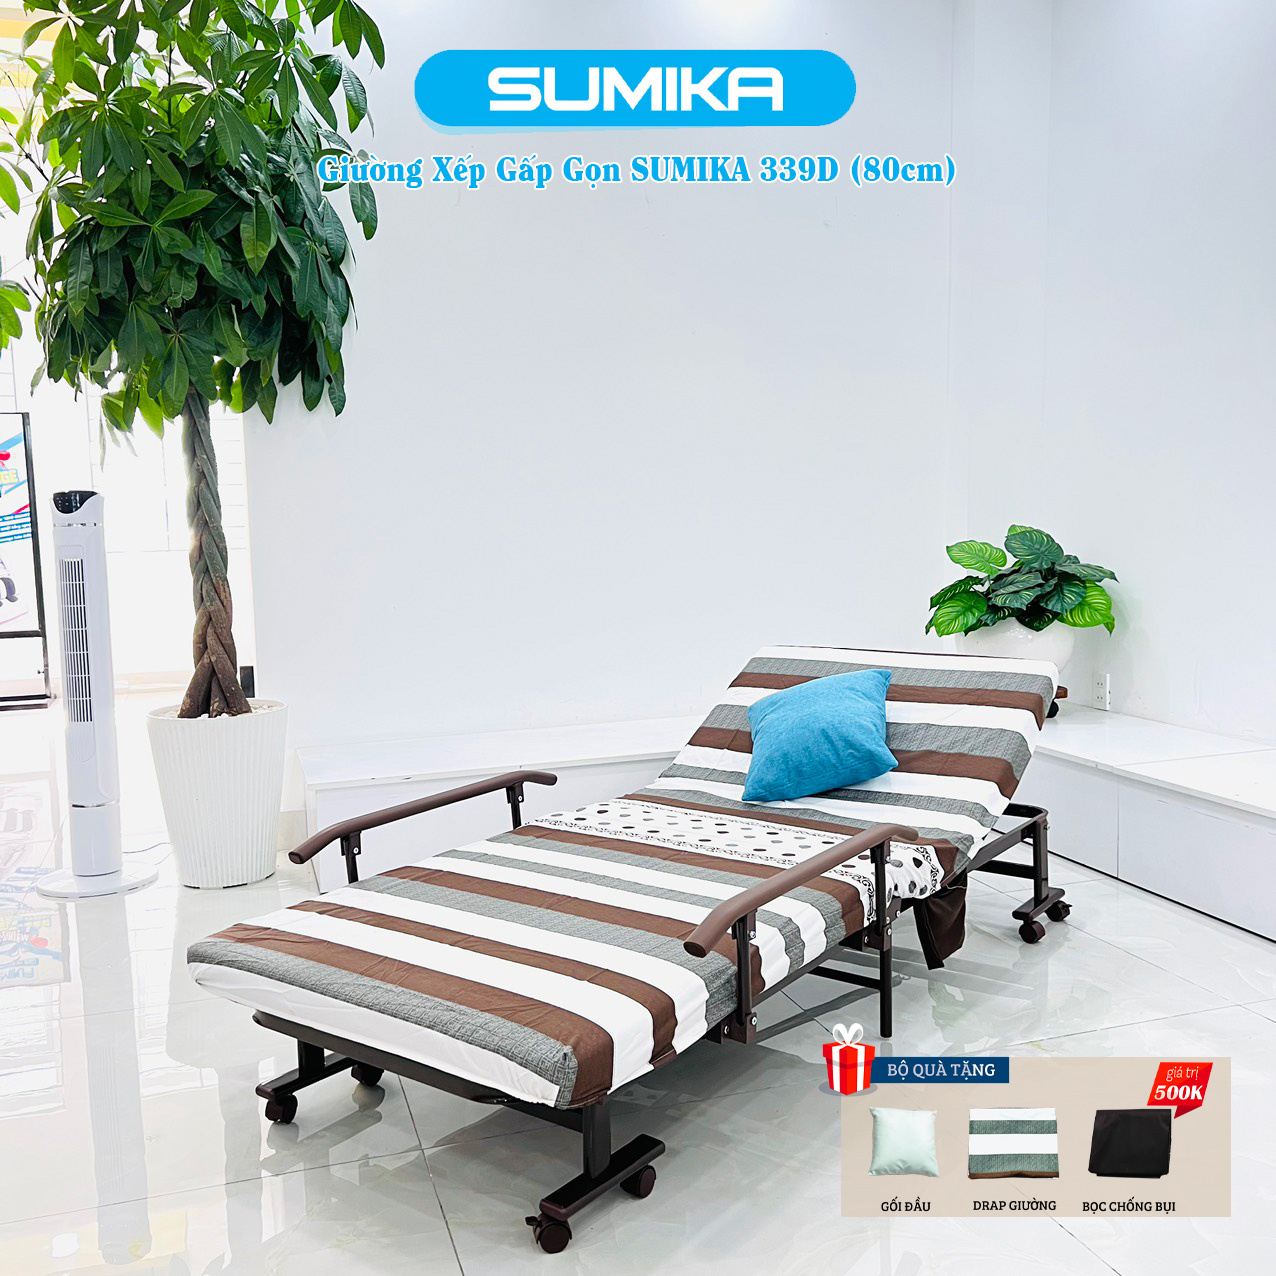 Giường xếp gọn cao cấp SUMIKA 339D, chiều rộng 80cm, khung thép, có bánh xe di chuyển